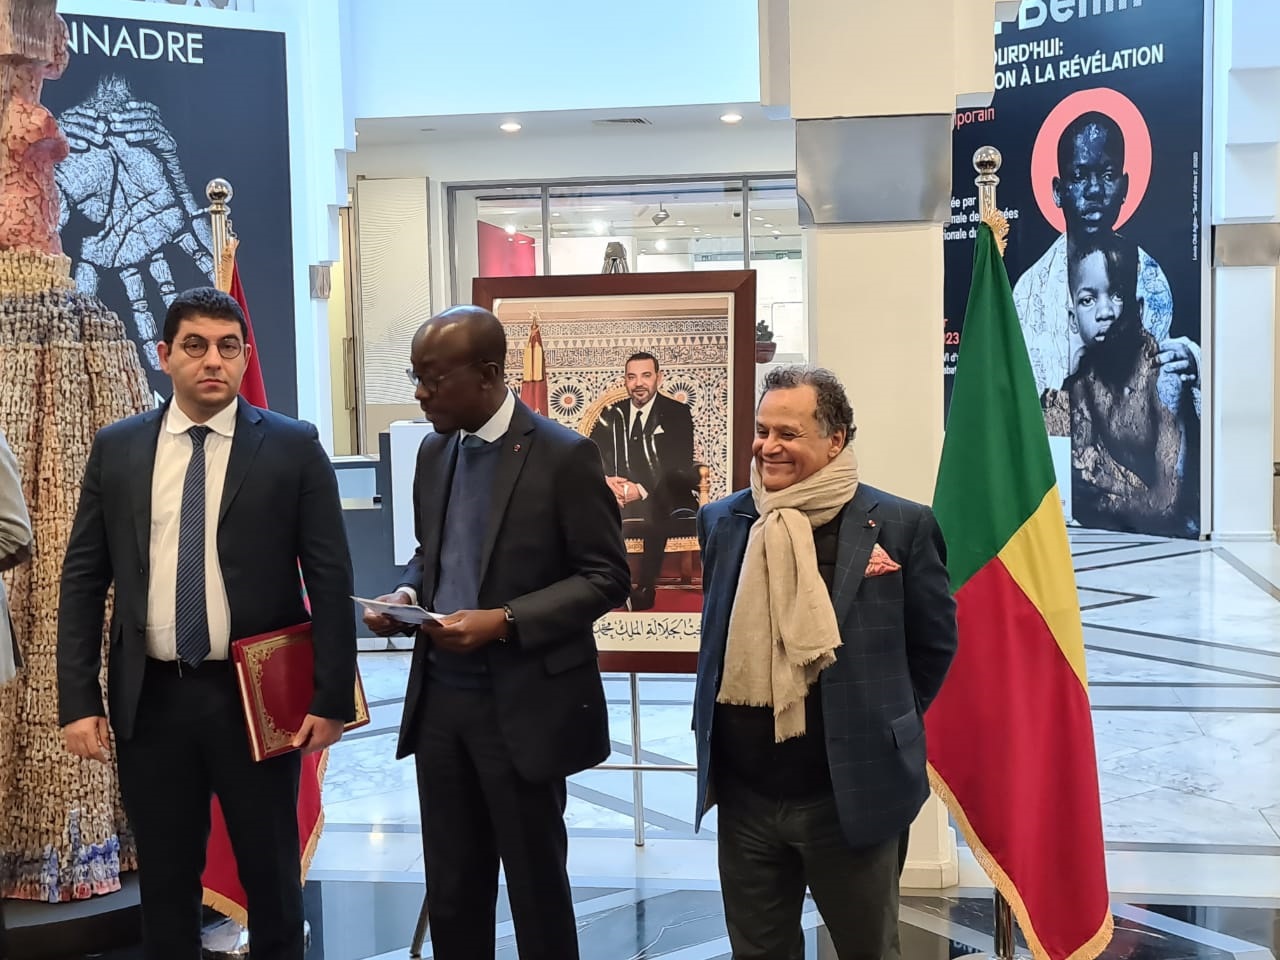 L'Art du Bénin d’hier et d’aujourd’hui : de la restitution à la révélation, au MMVI de Rabat